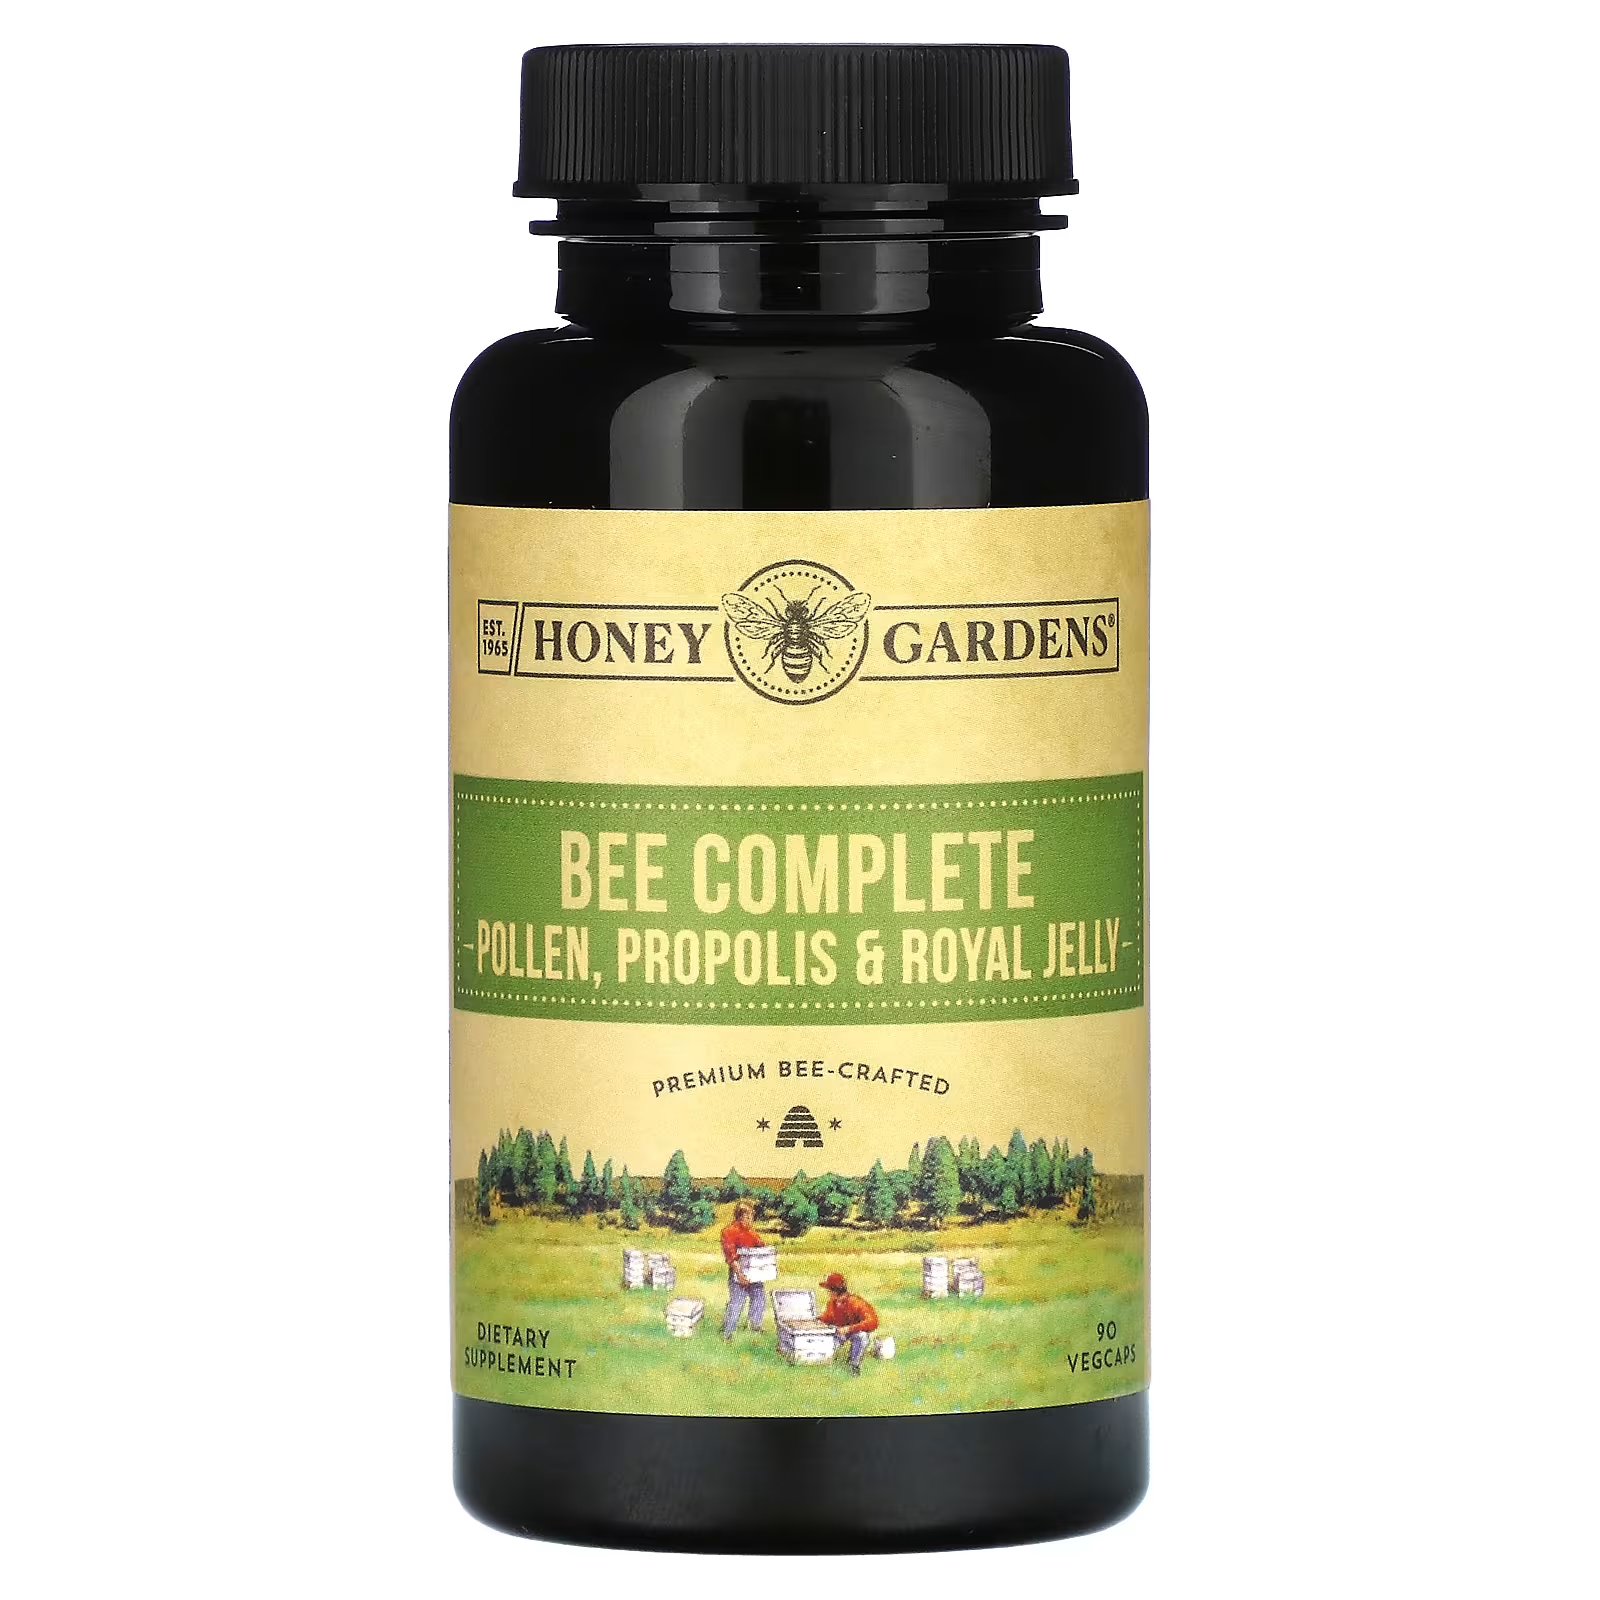 Honey Gardens Bee Полная пыльца, прополис и маточное молочко, 90 растительных капсул пчелиный прополис honey gardens 2x эффективность 60 капсул